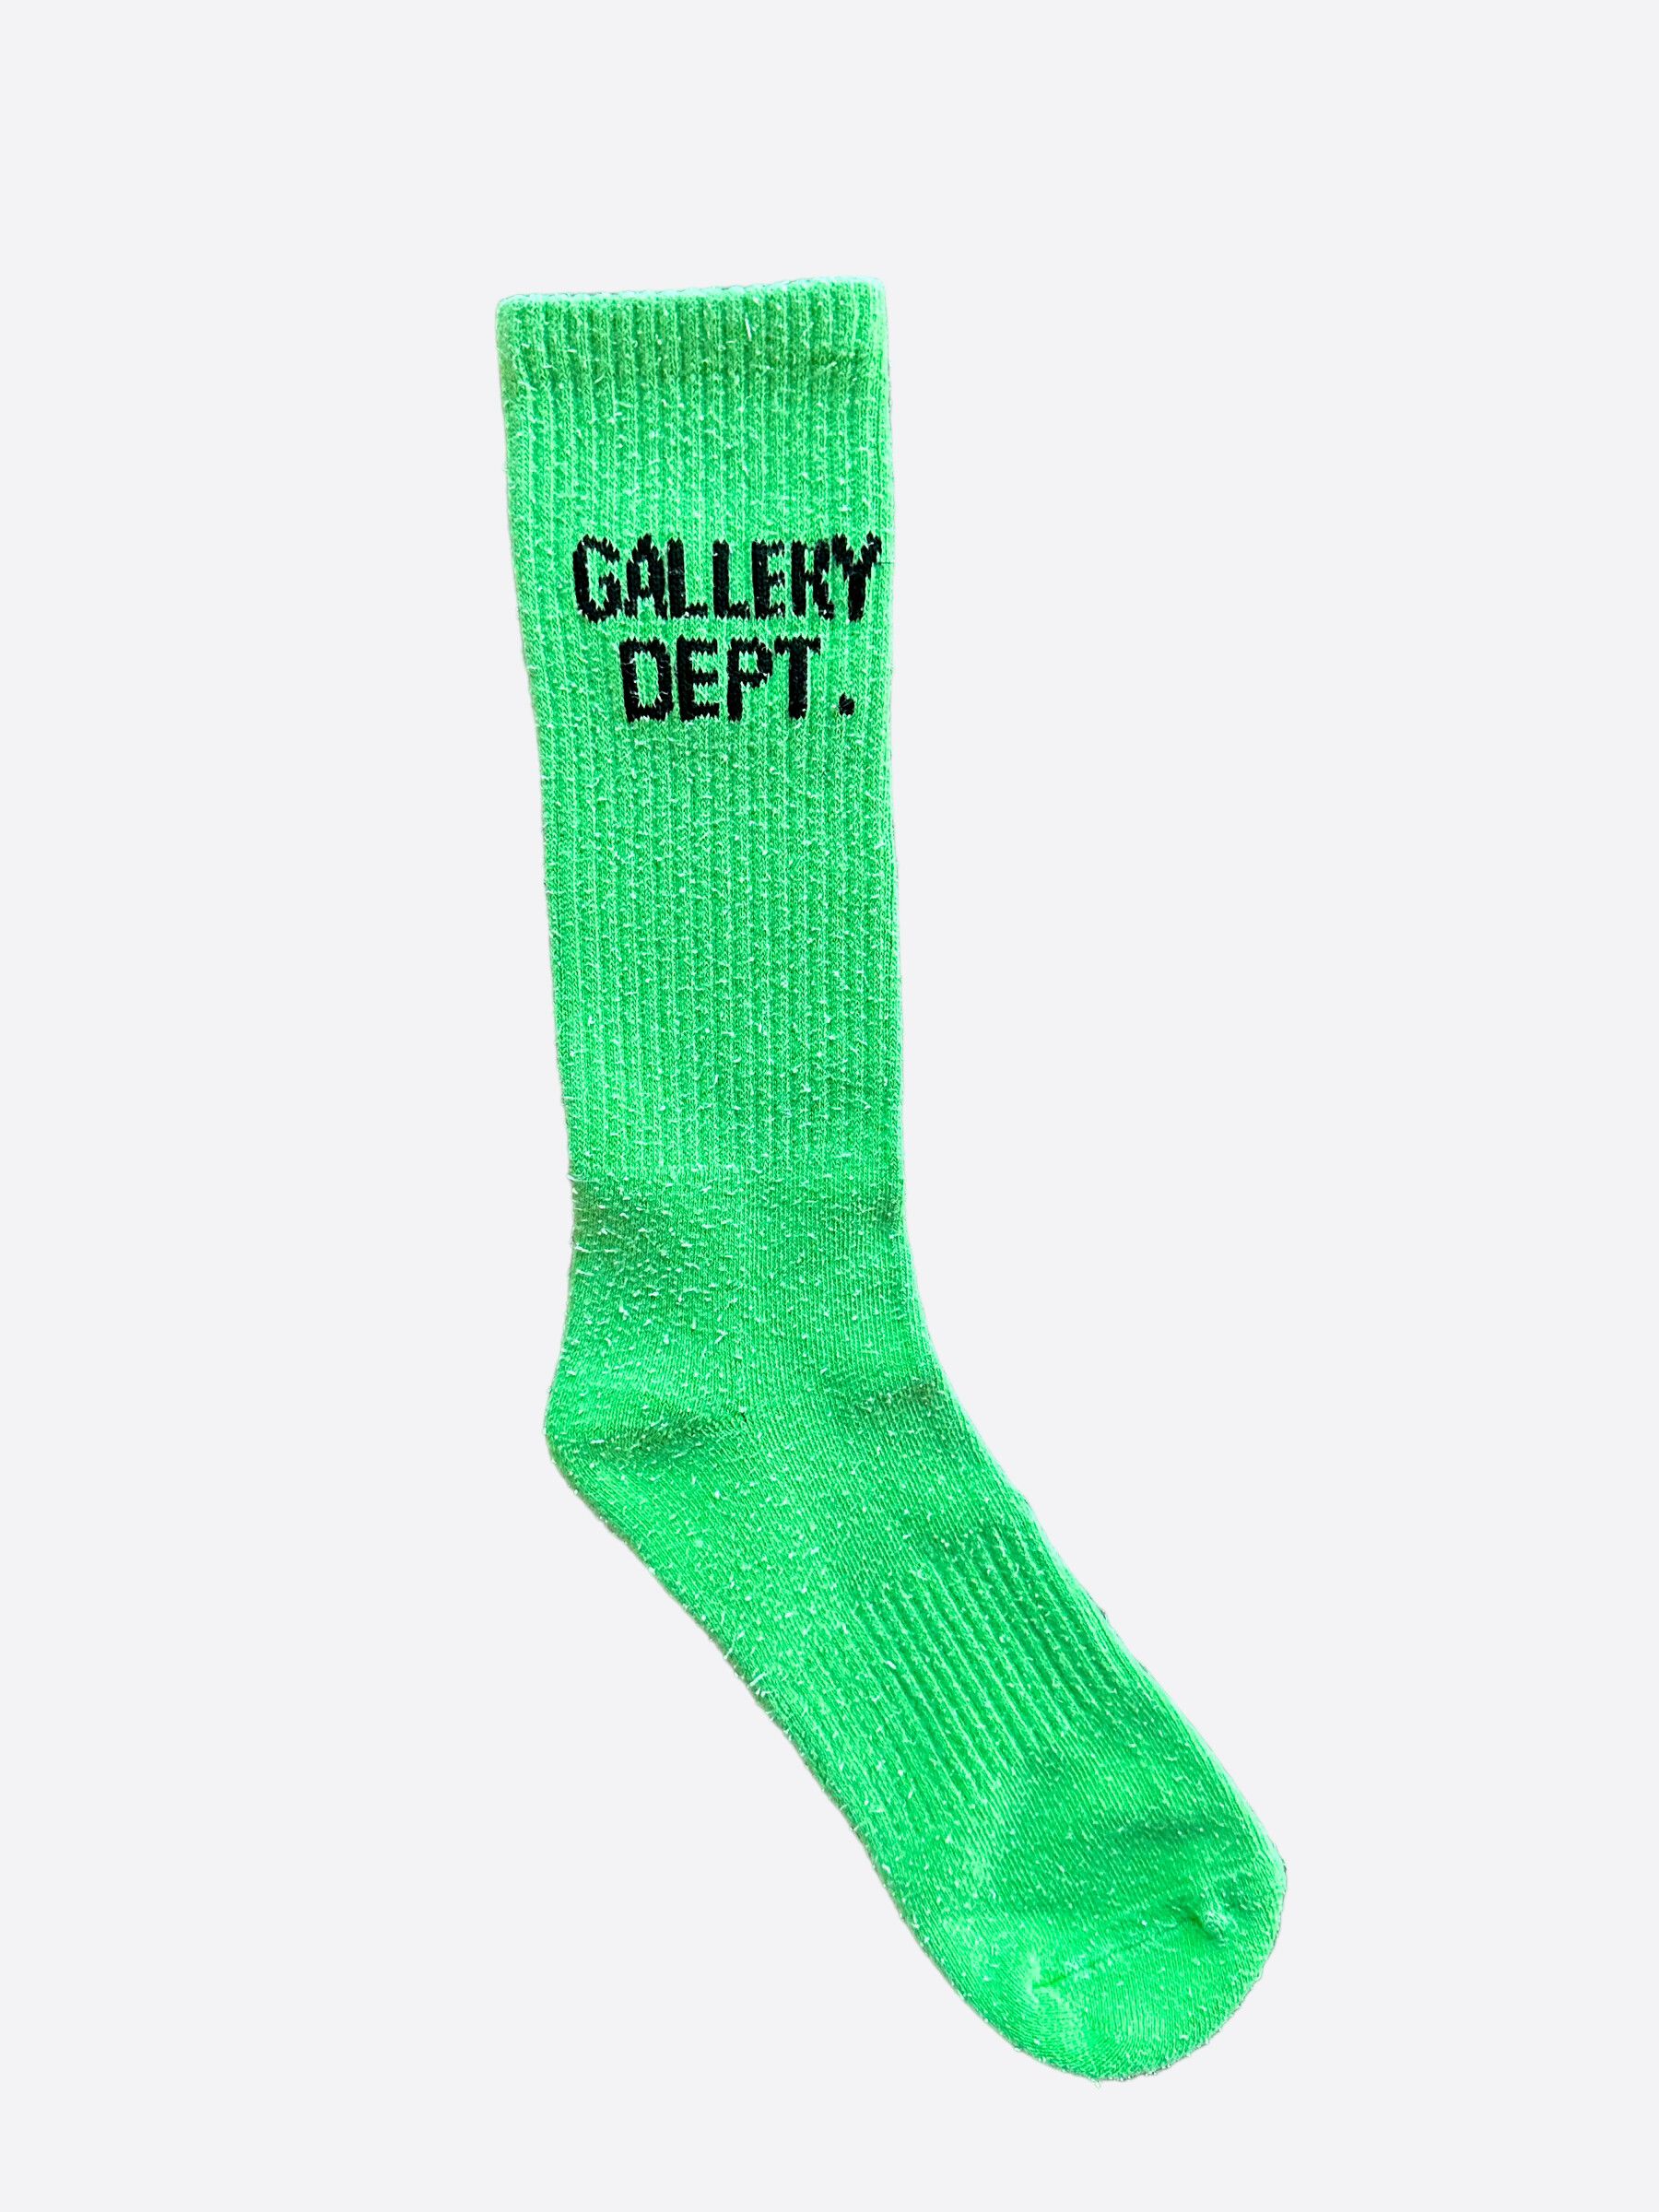 Pre-owned Gallery Dept. Green & Black Logo Socks